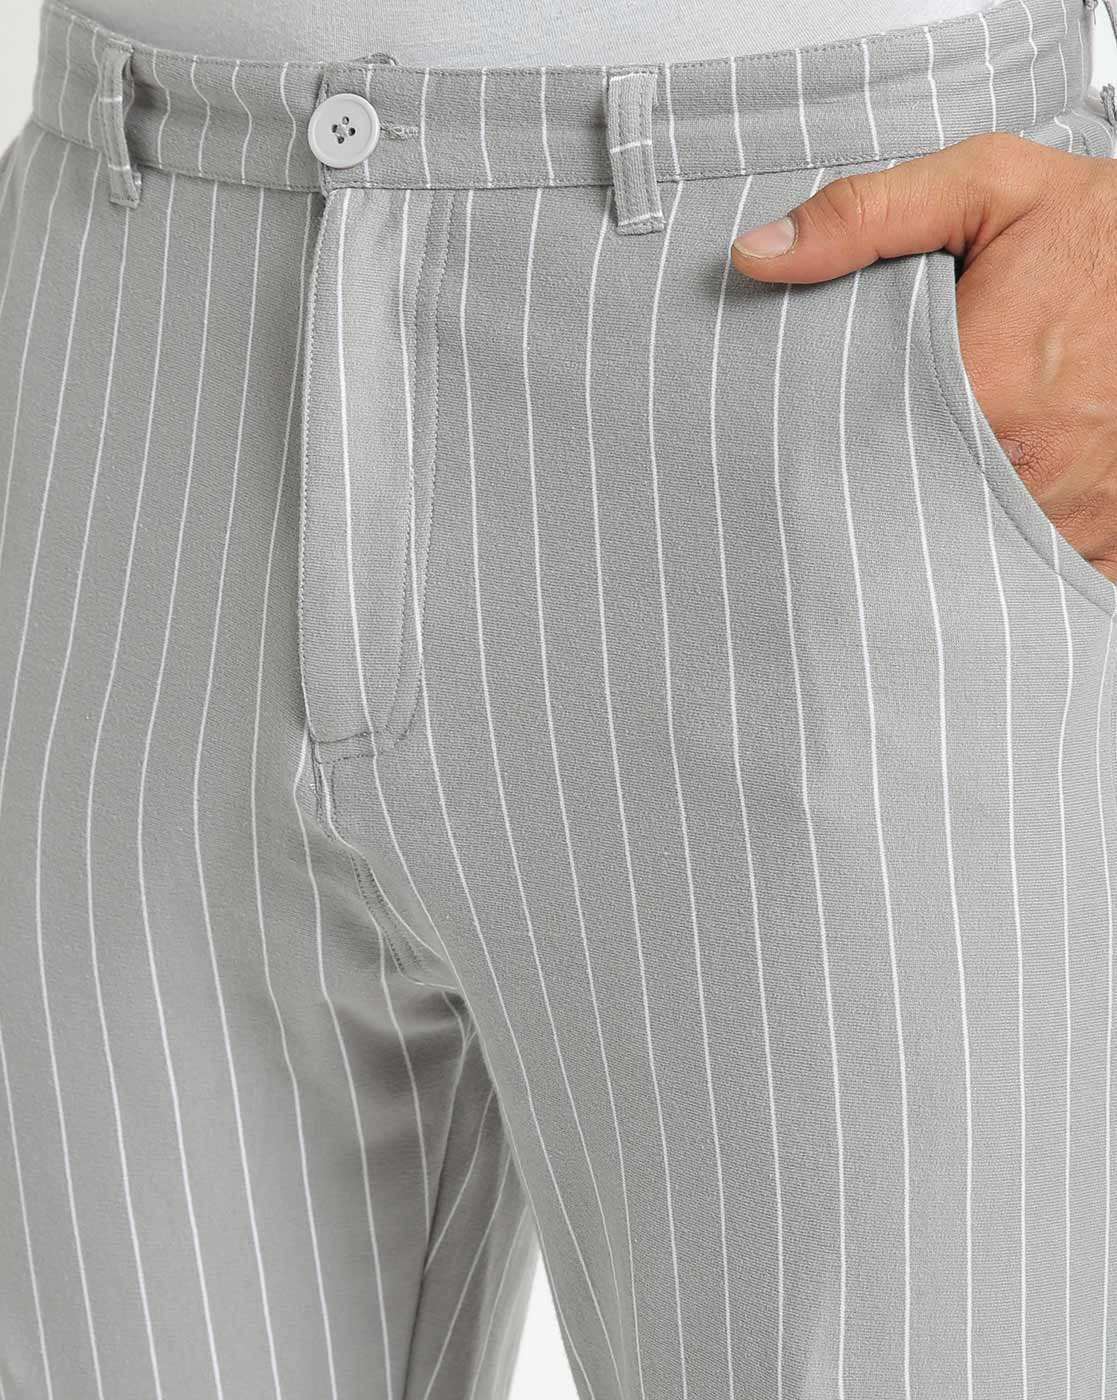 QWANG Fashion Men's Slim Corduroy Trousers Business Suit Pants Casual Golf  Pants - Walmart.com